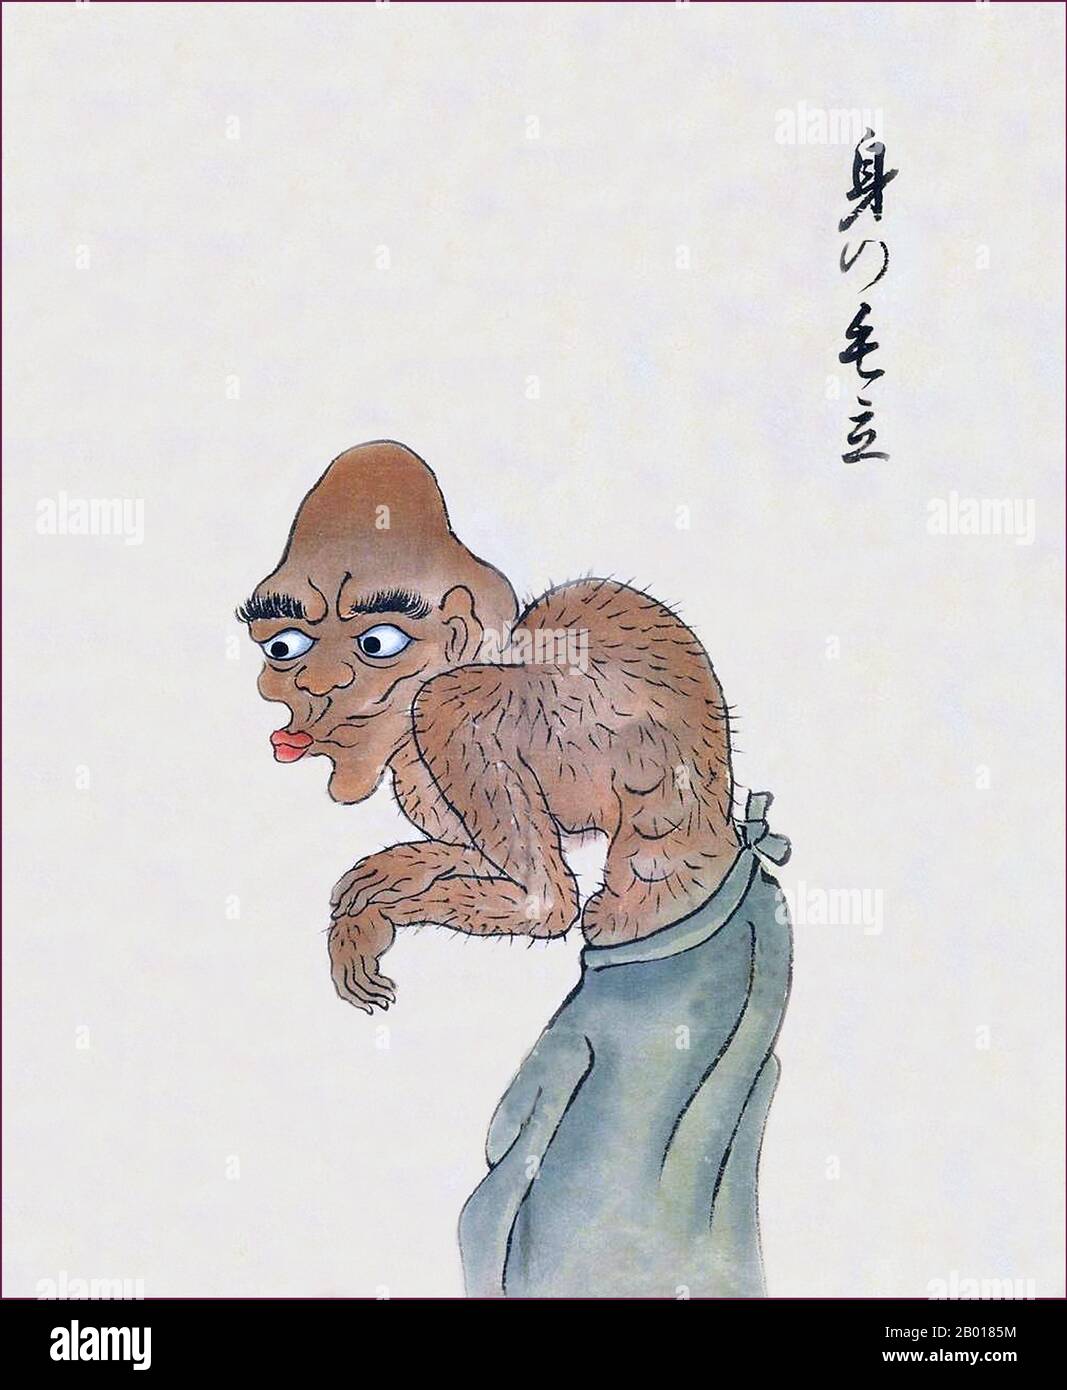 Japón: El mi-no-kedachi tiene una capa de pelo corporal que se levanta al final del bakemono Zukushi Monster Scroll, período Edo (1603-1868), siglo 18th-19th. El rollo de mano de bakemono Zukushi, pintado en el período Edo (siglo 18th-19th) por un artista desconocido, representa 24 monstruos tradicionales que tradicionalmente acechan a la gente y localidades en Japón. Foto de stock